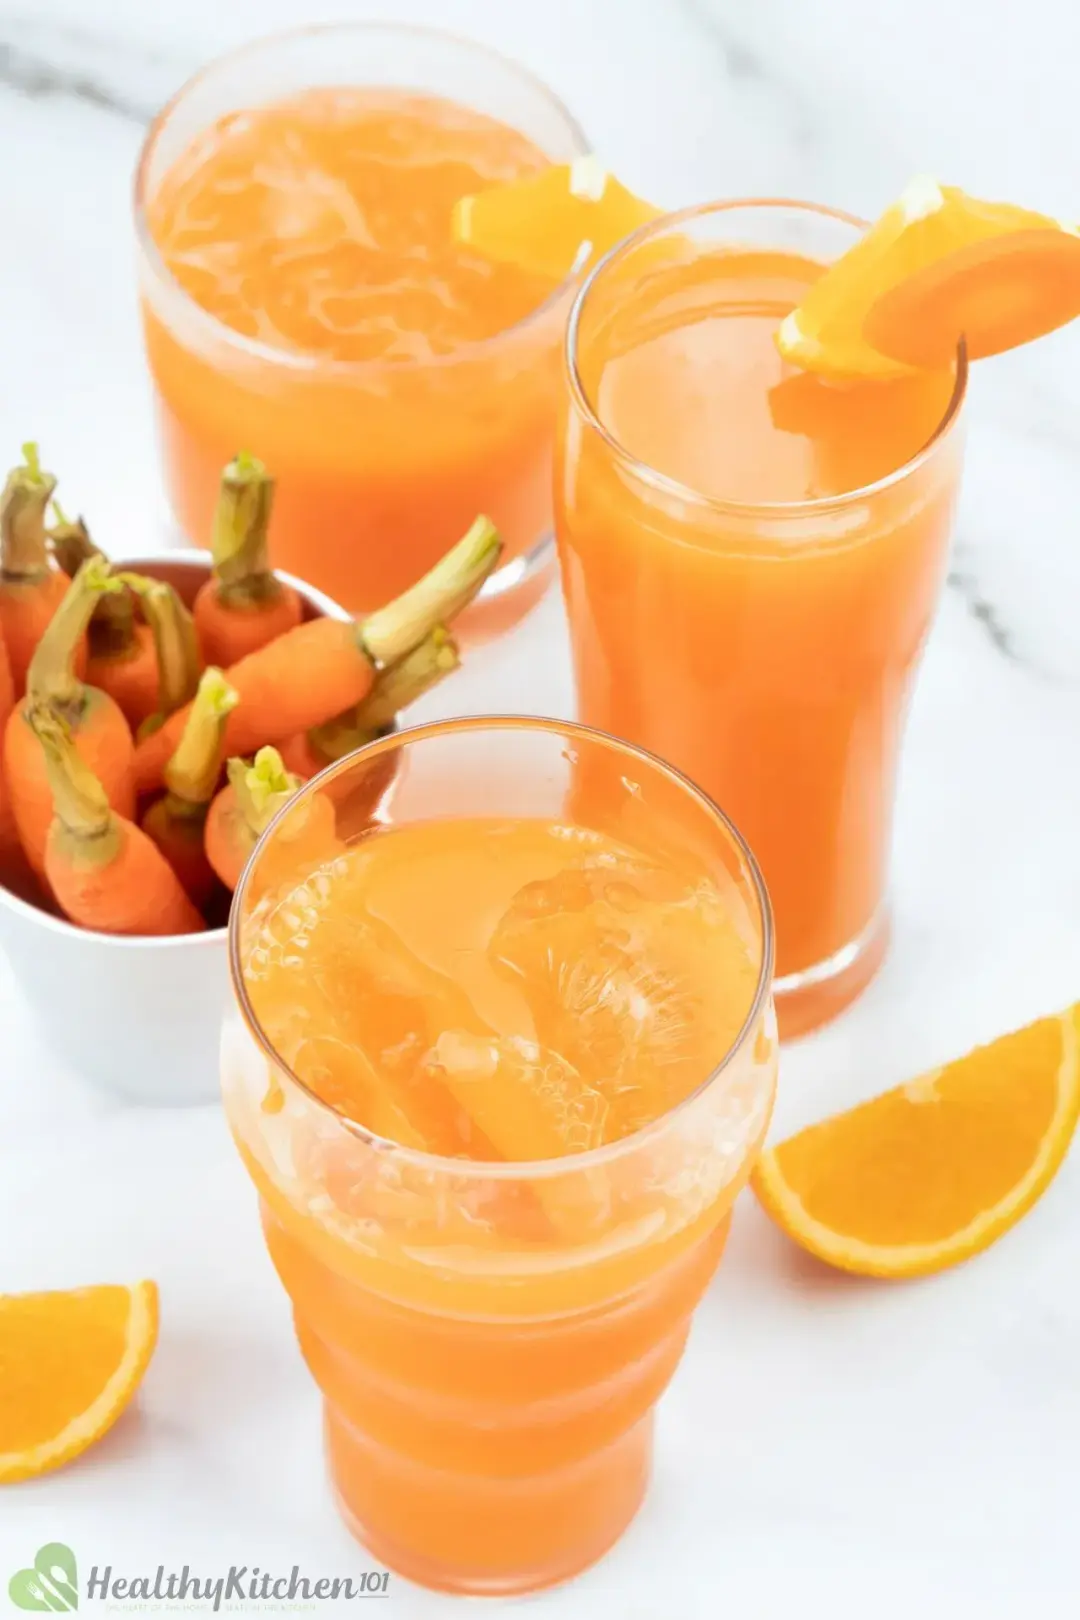 Carrot Orange Juice Recipe Healthykitchen101